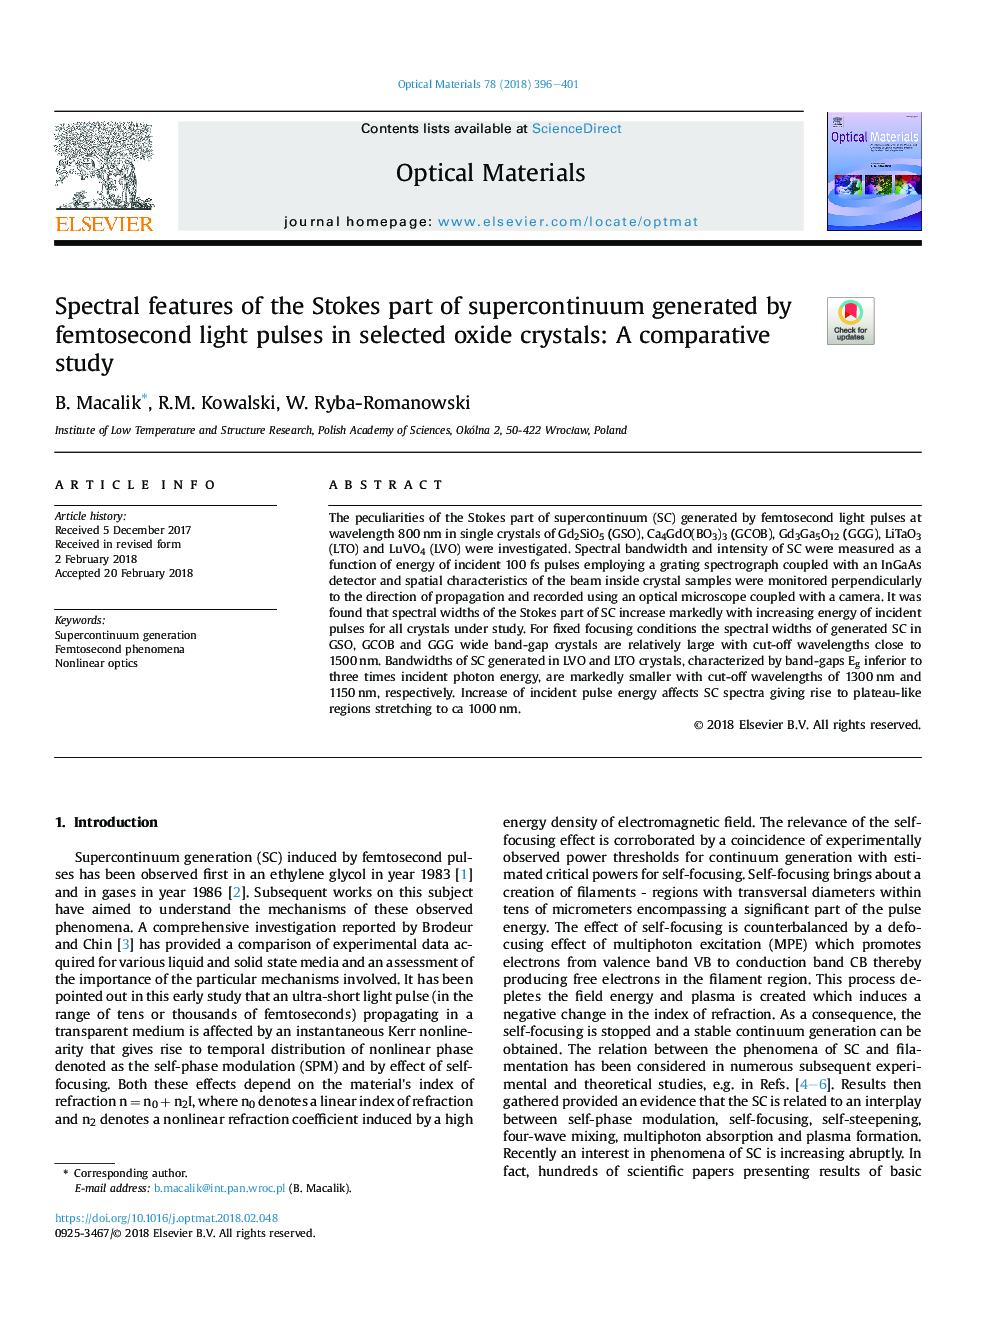 ویژگی های طیفی از بخشی استوکس ابررسانایی تولید شده توسط پالس های نور فموتوسون در بلورهای اکسید انتخاب شده: یک مطالعه مقایسه ای 